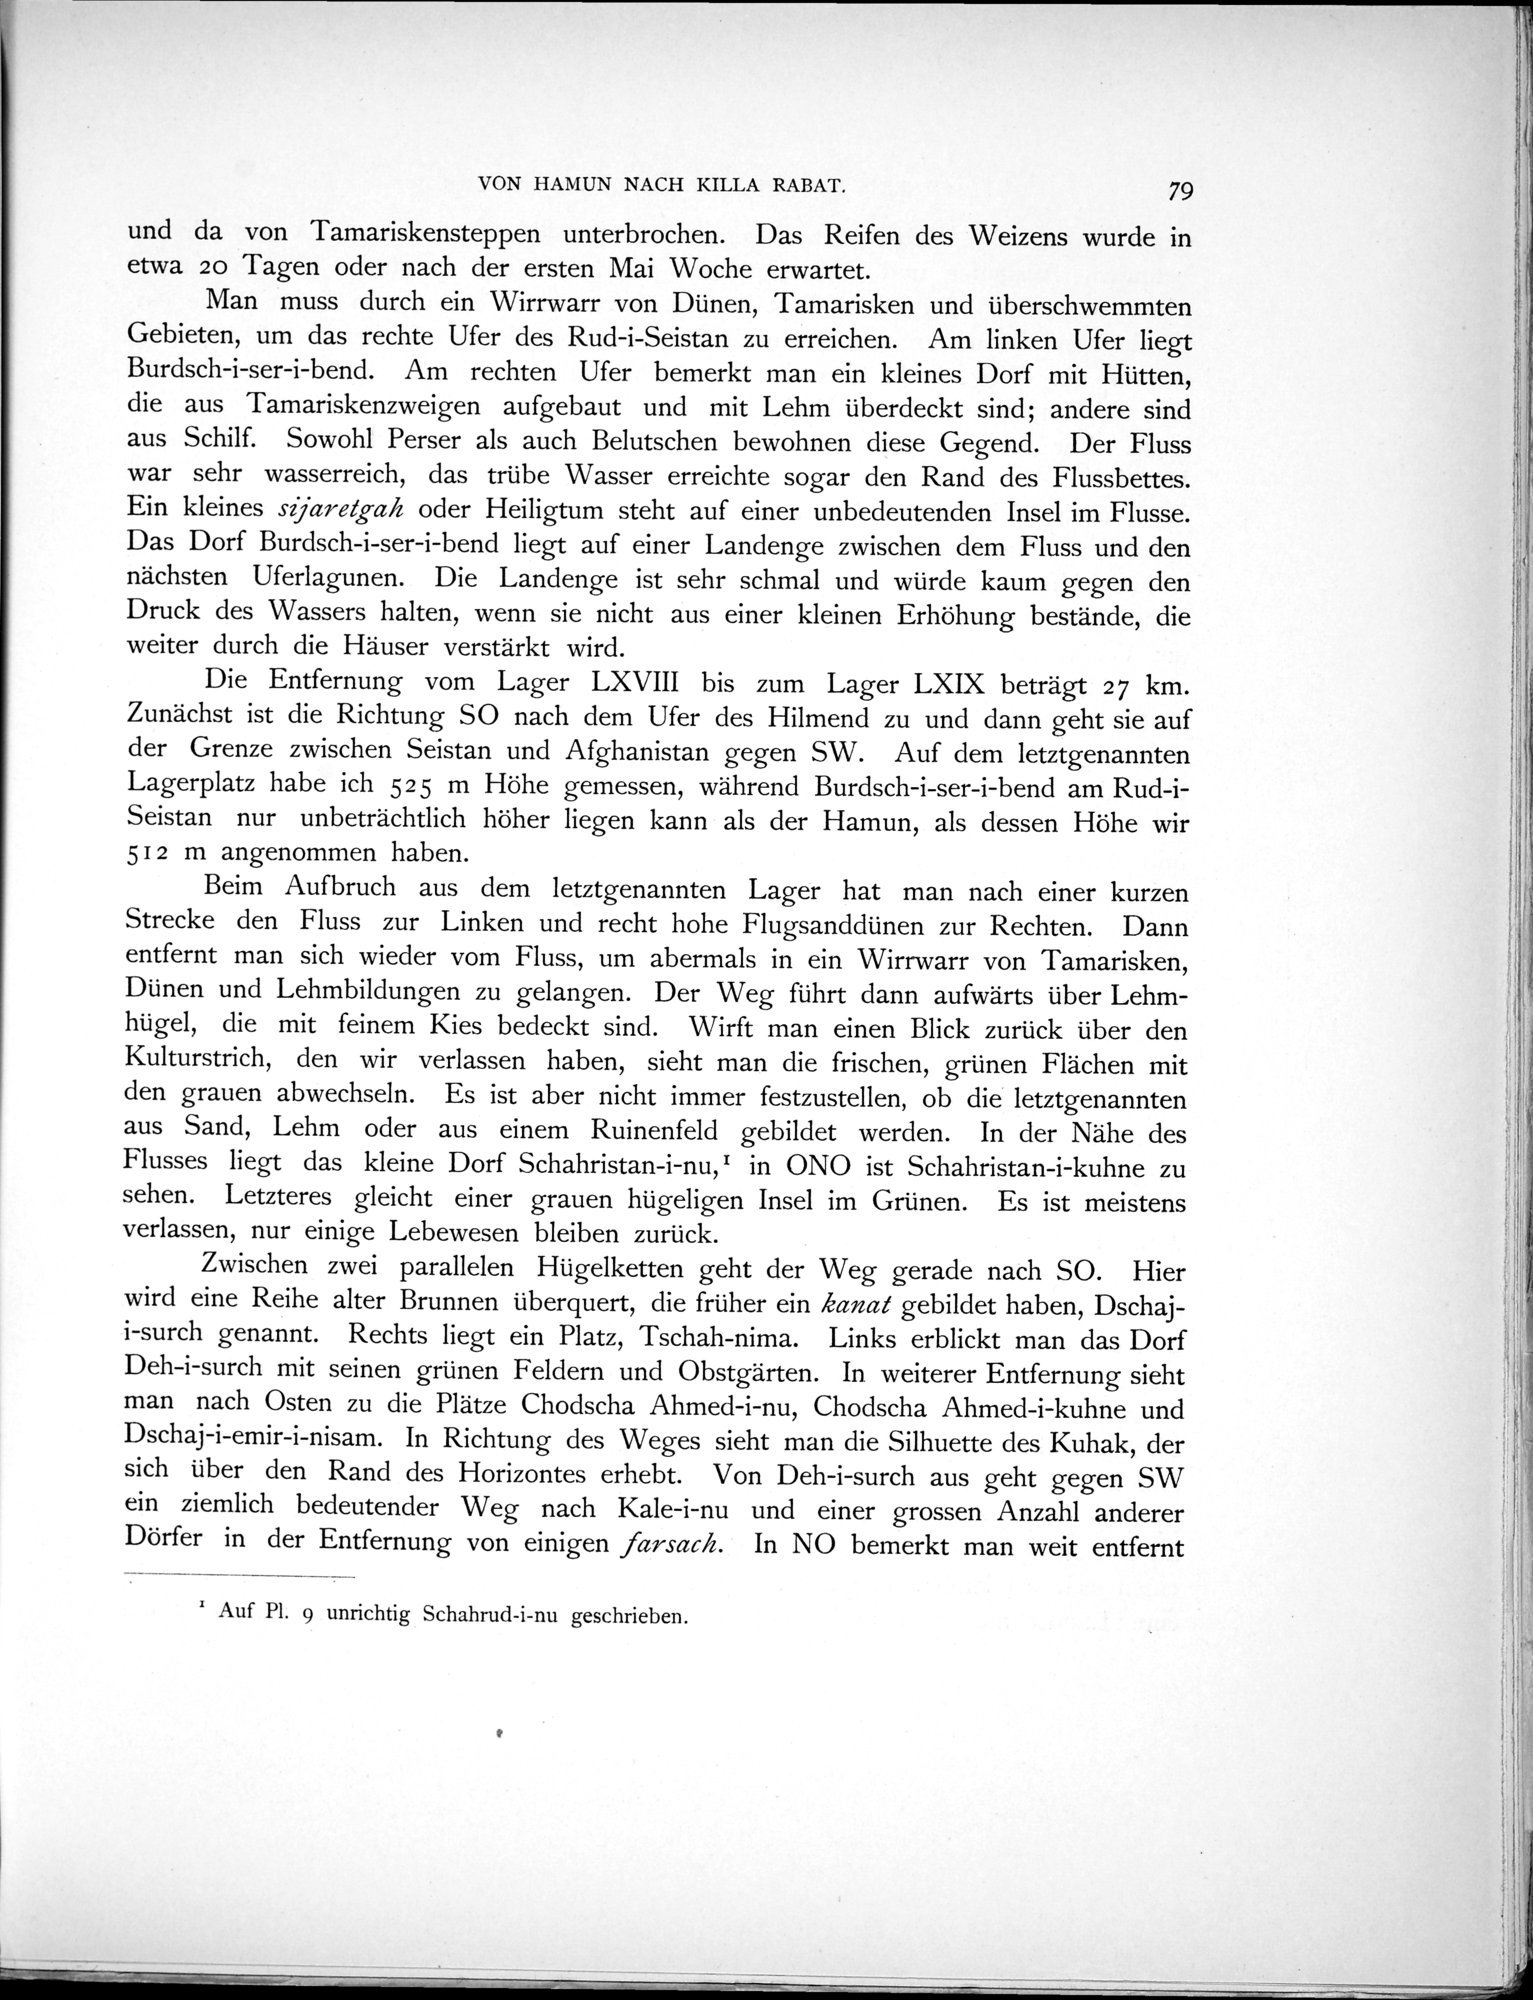 Eine Routenaufnahme durch Ostpersien : vol.1 / Page 259 (Grayscale High Resolution Image)